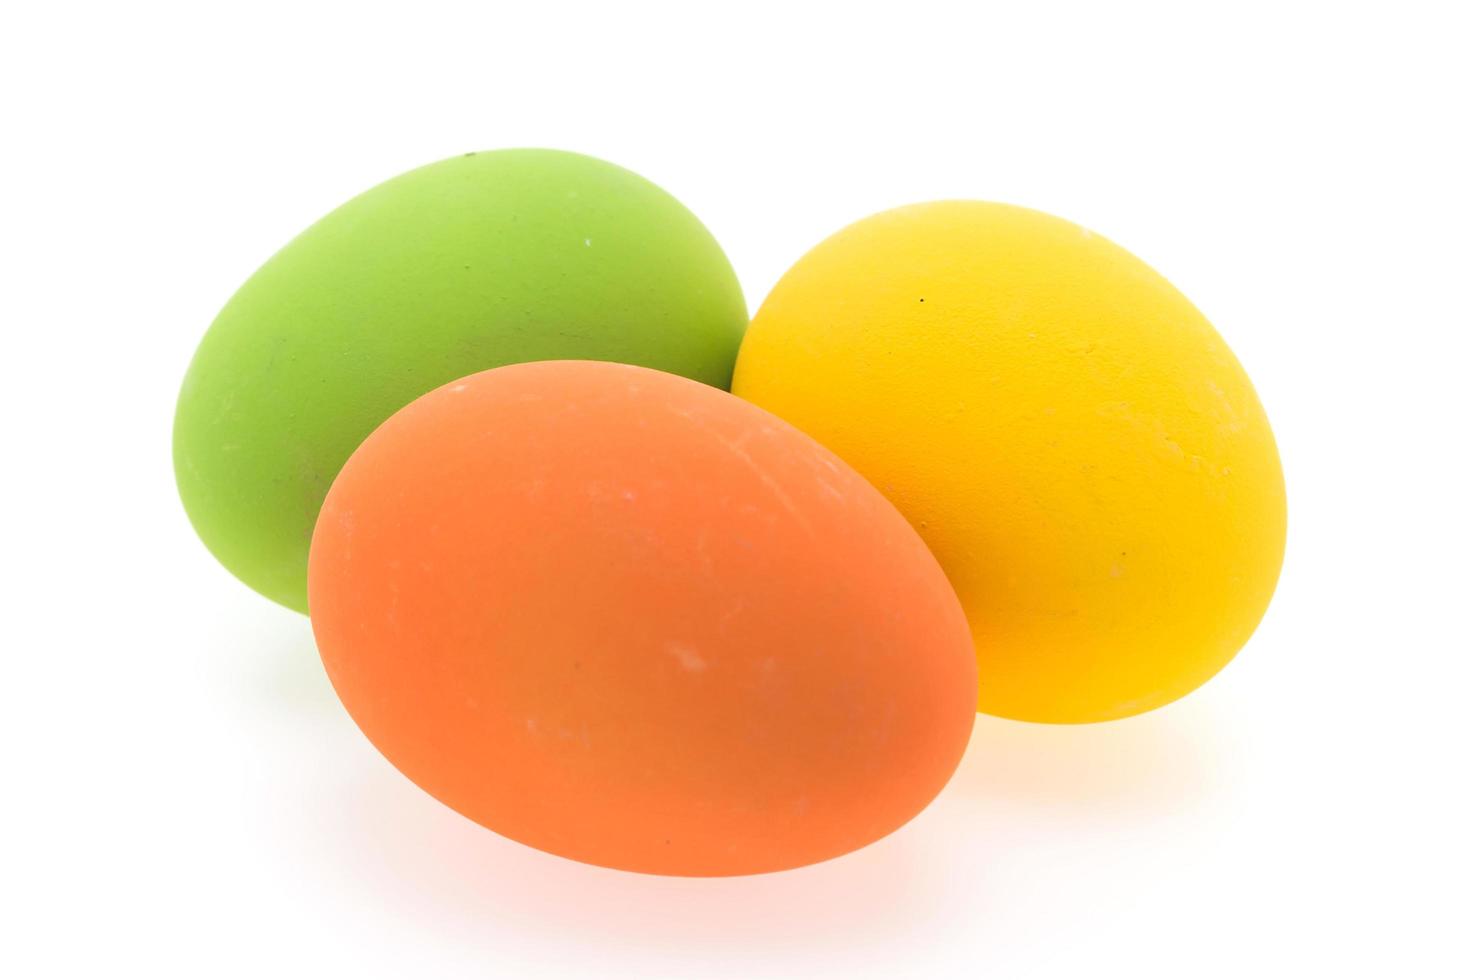 coloridos huevos de pascua foto